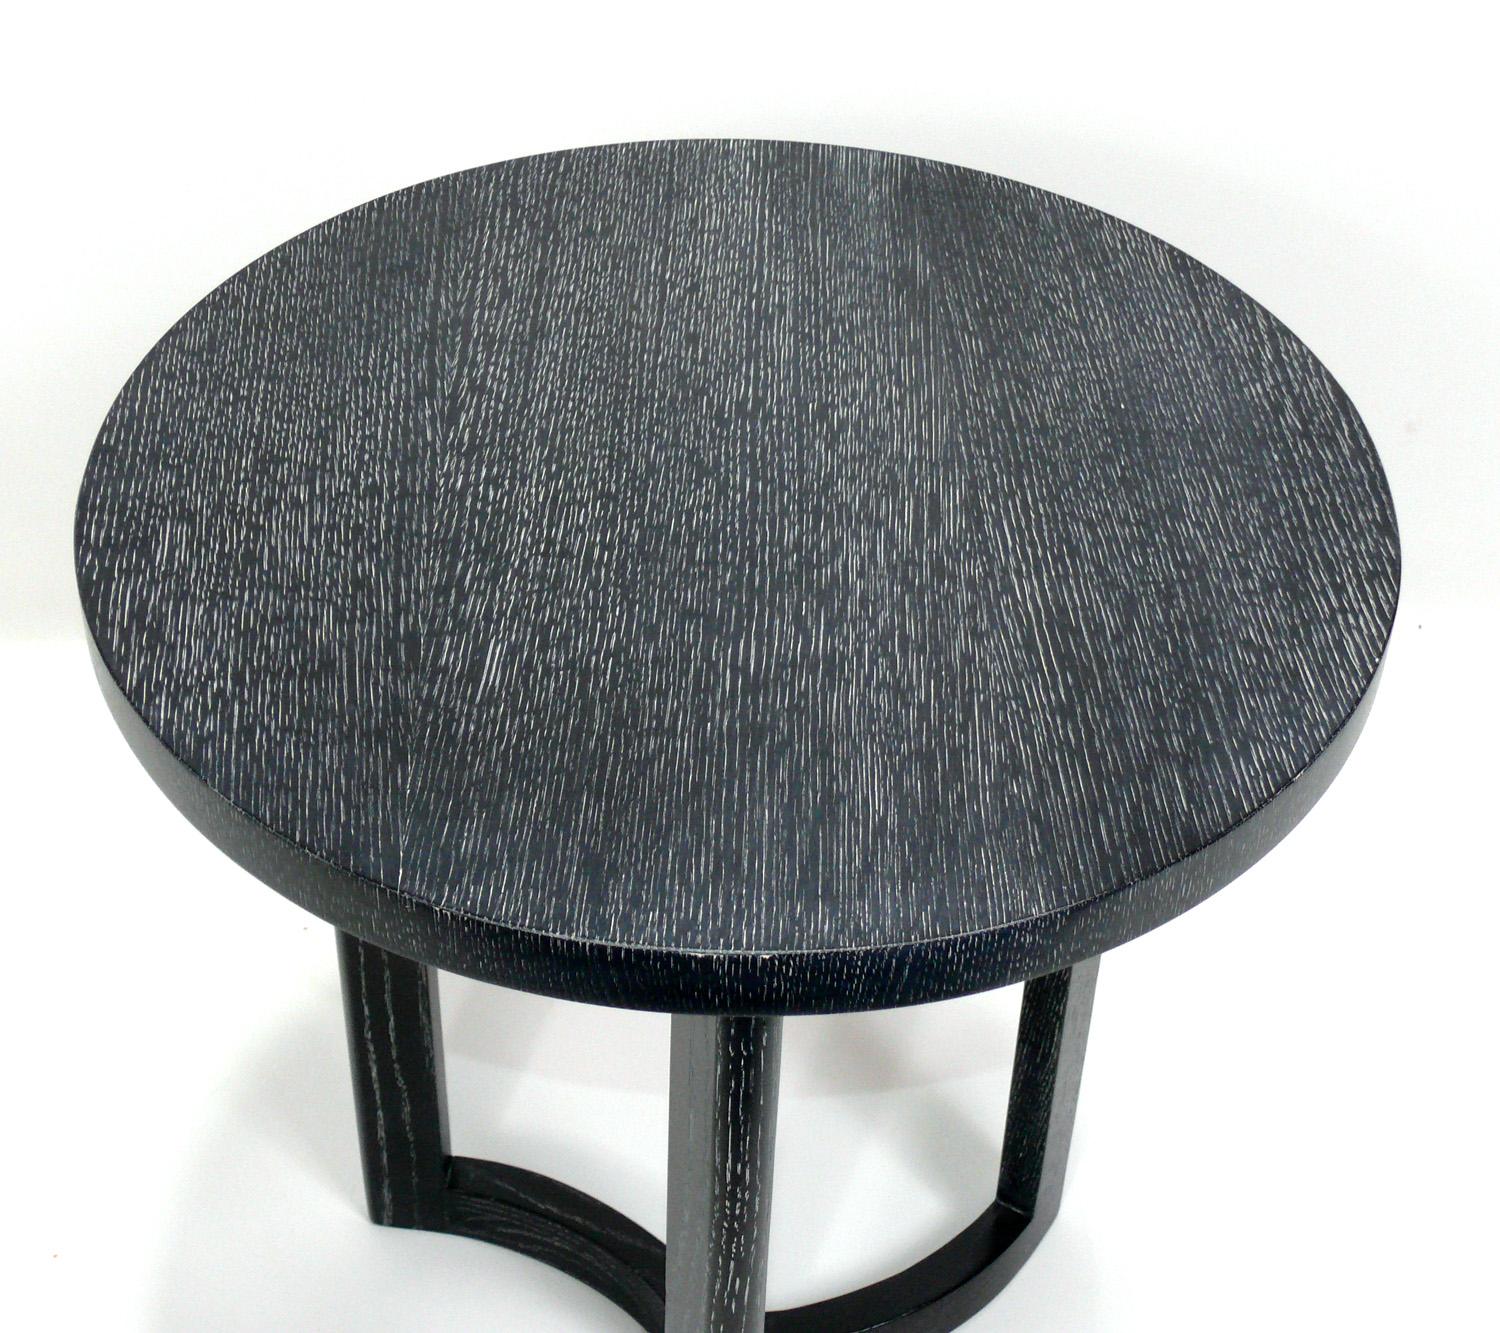 Eleganter, schwarz gebeizter Tisch aus gekalkter Eiche in der Art von Samuel Marx, Amerikaner, ca. 1940er Jahre. Er hat eine vielseitige Größe und kann als Beistelltisch, zwischen zwei Stühlen oder als Nachttisch verwendet werden. Kürzlich neu